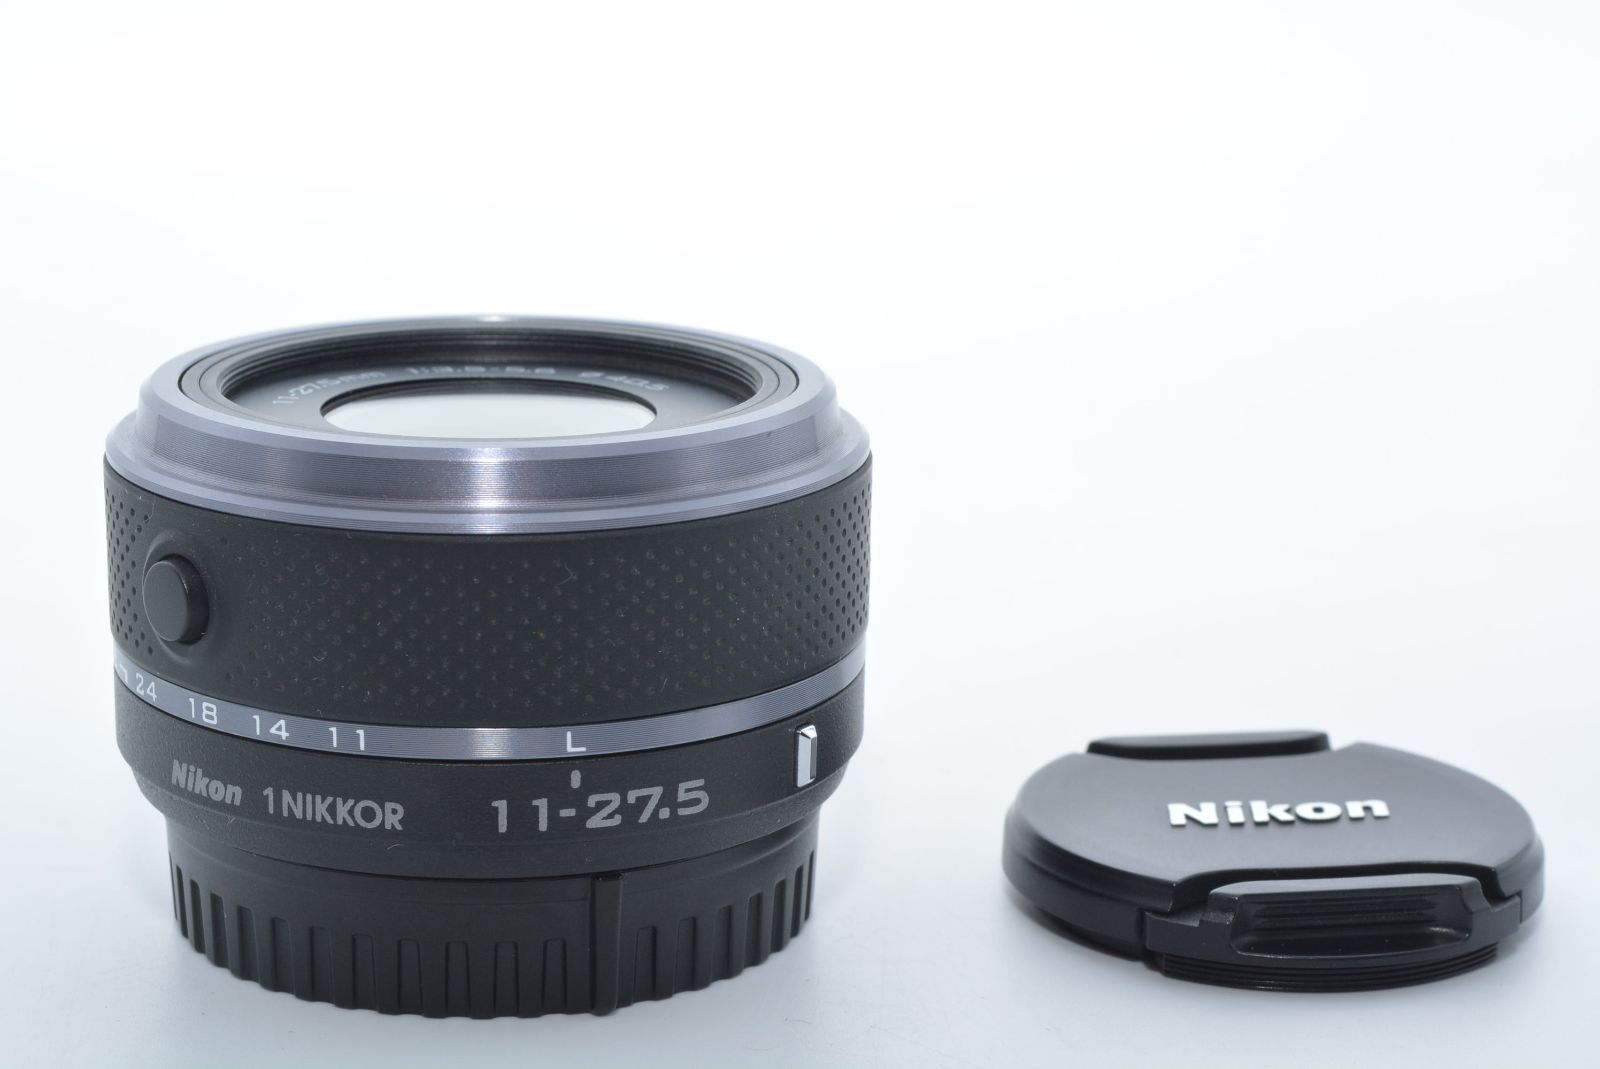 Nikon ニコン 1 NIKKOR 11-27.5mm f/3.5-5.6 ブラック - グローバル